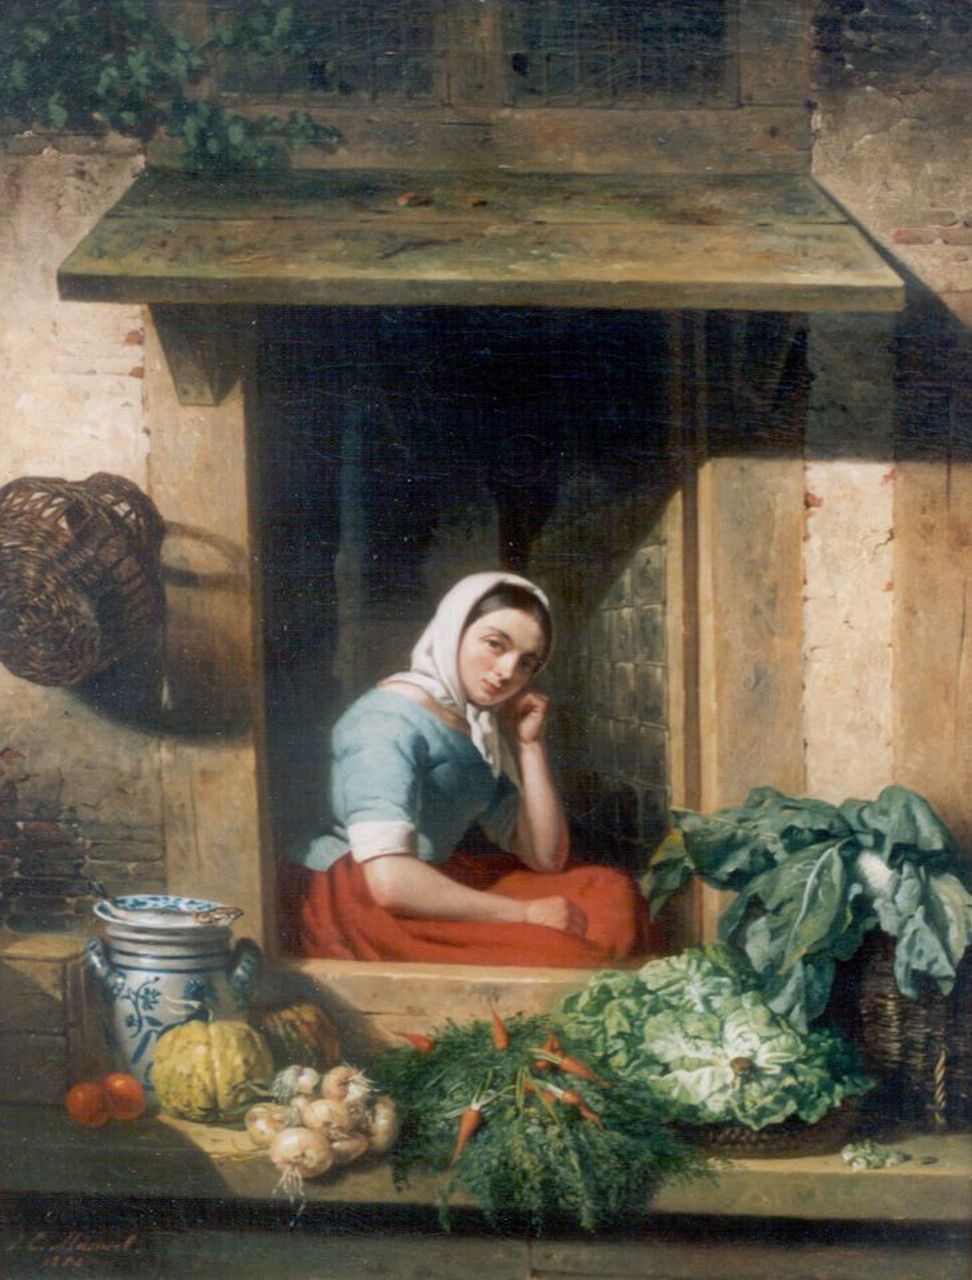 Masurel J.E.  | Johannes Engel Masurel, Selling vegetables, oil on canvas 53.0 x 40.8 cm, signed l.l. and dated 1852